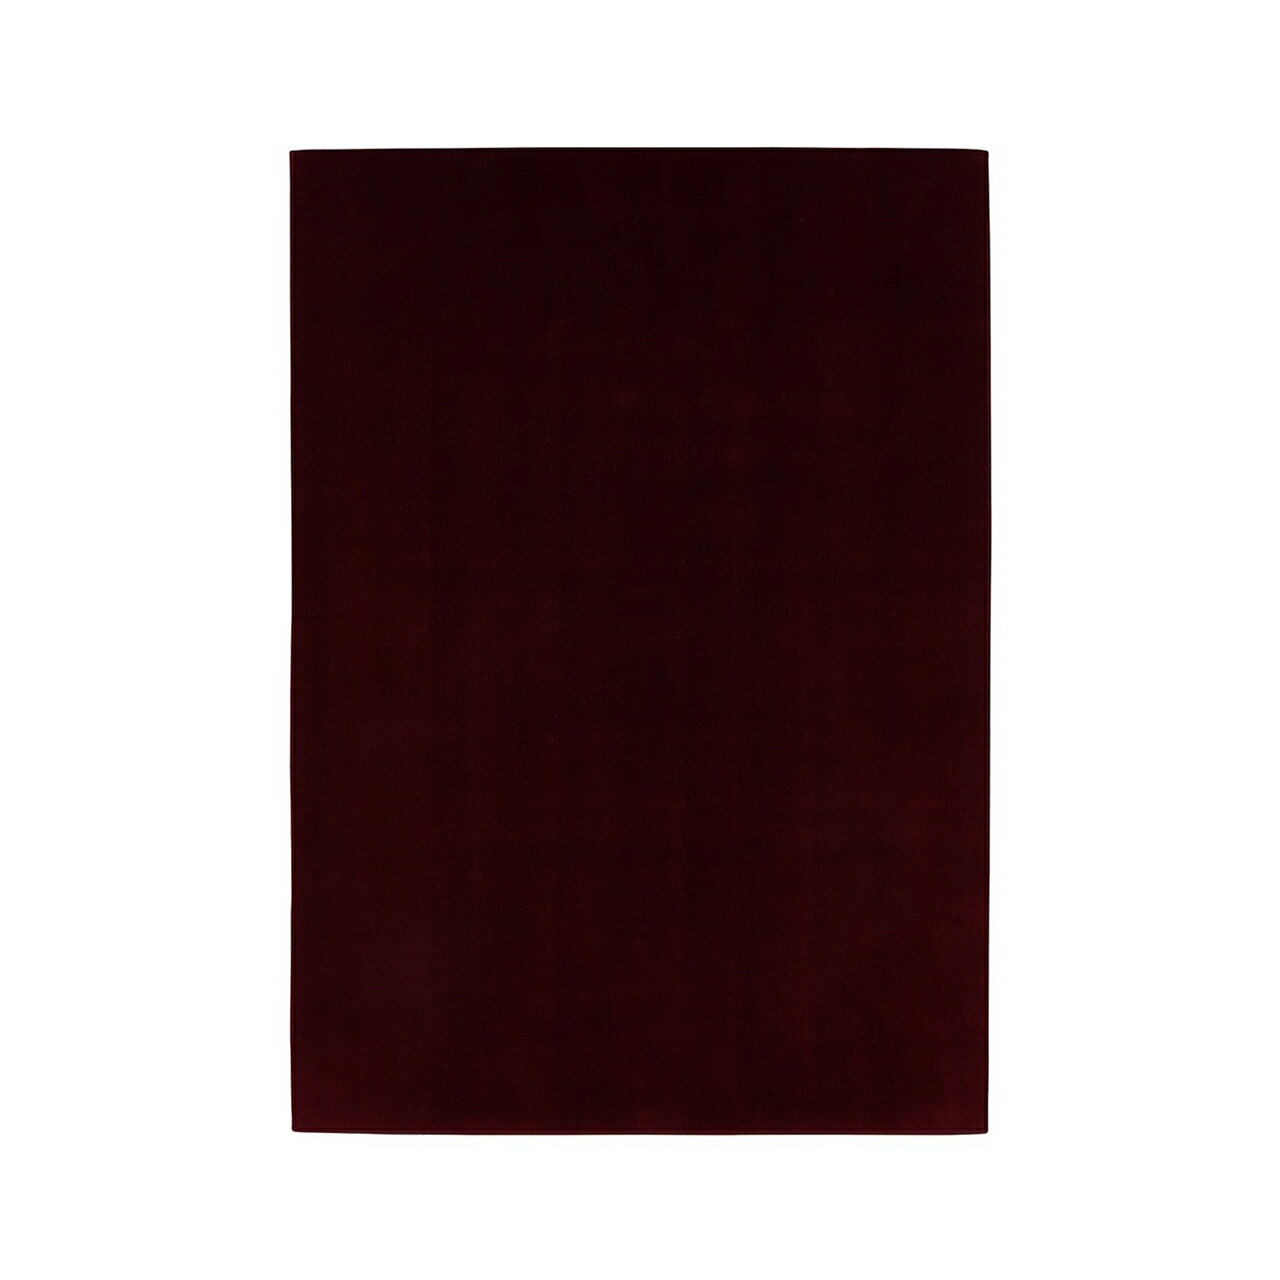 [山形緞通 プレミアム無地]『MANYO』MURASAKI [選べるS/Mサイズ] オリエンタルカーペット 絨毯 じゅうたん 高級 高品質 インテリア ラグ マット 敷物 F21A-160var